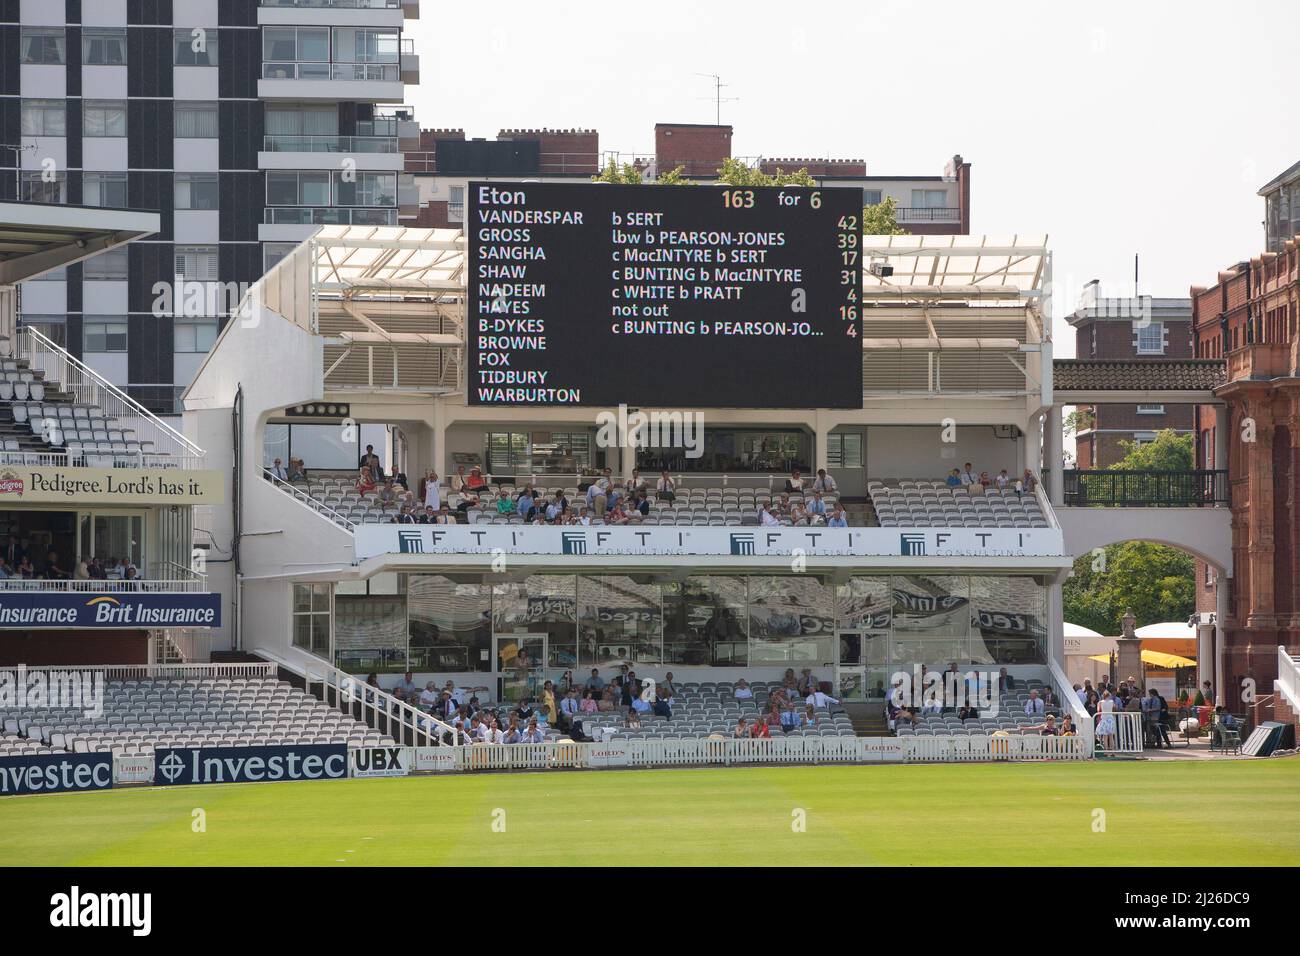 Allgemeine Ansicht des Bodens und Anzeigetafel während des jährlichen Cricket-Spiels Eton gegen Harrow bei Lords. Bild von James Boardman Stockfoto